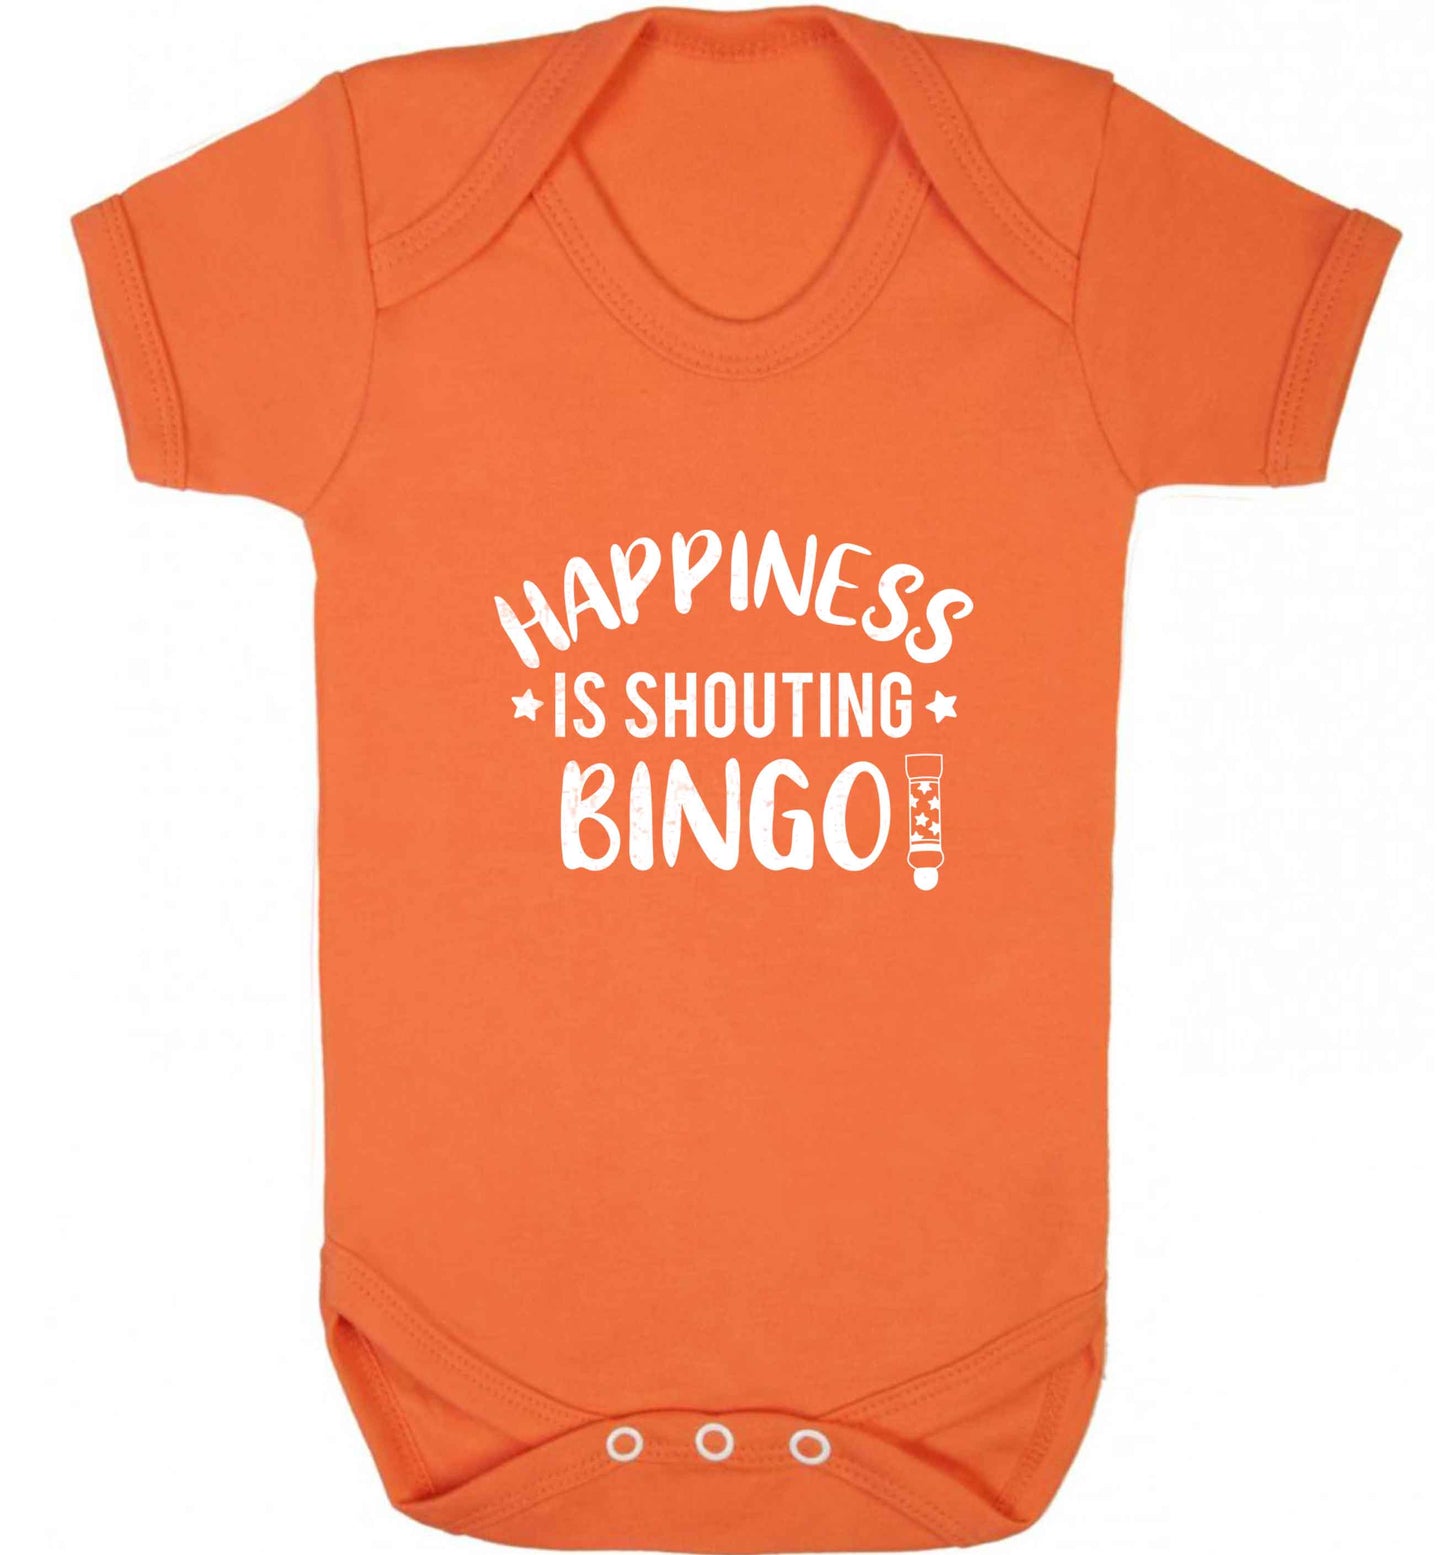 Happiness is shouting bingo! baby vest orange 18-24 months